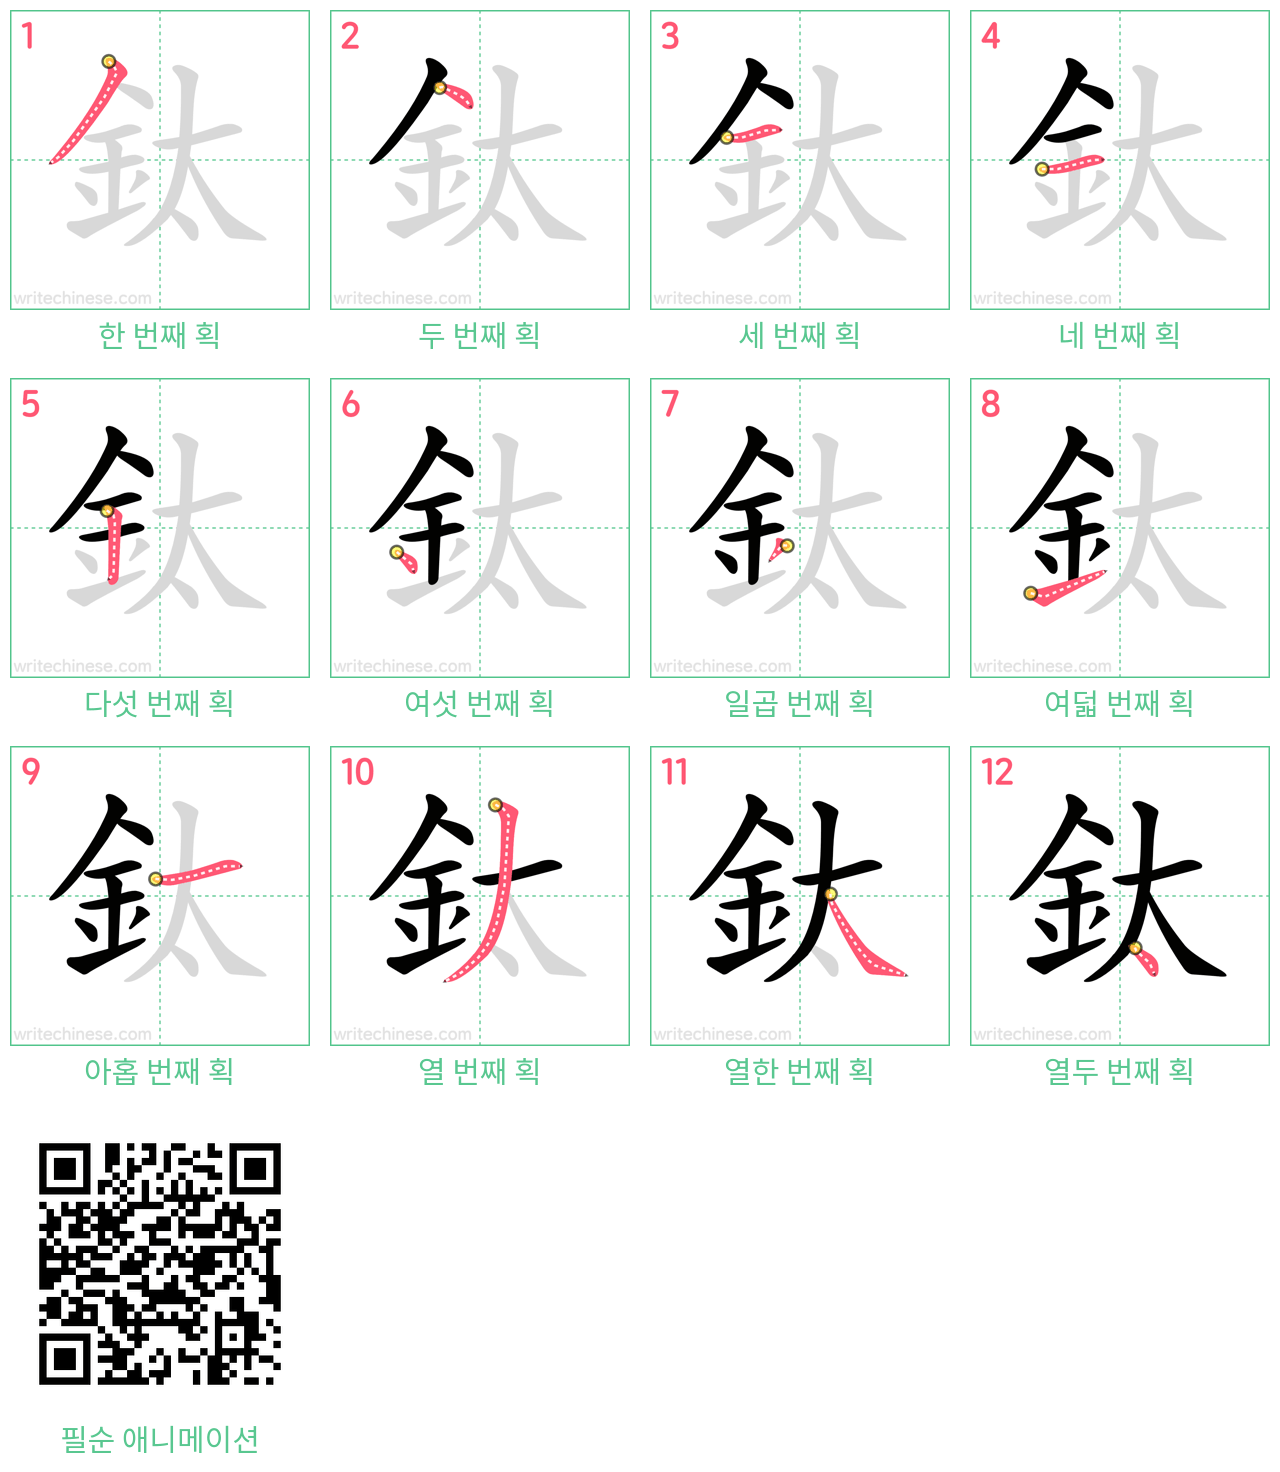 鈦 step-by-step stroke order diagrams